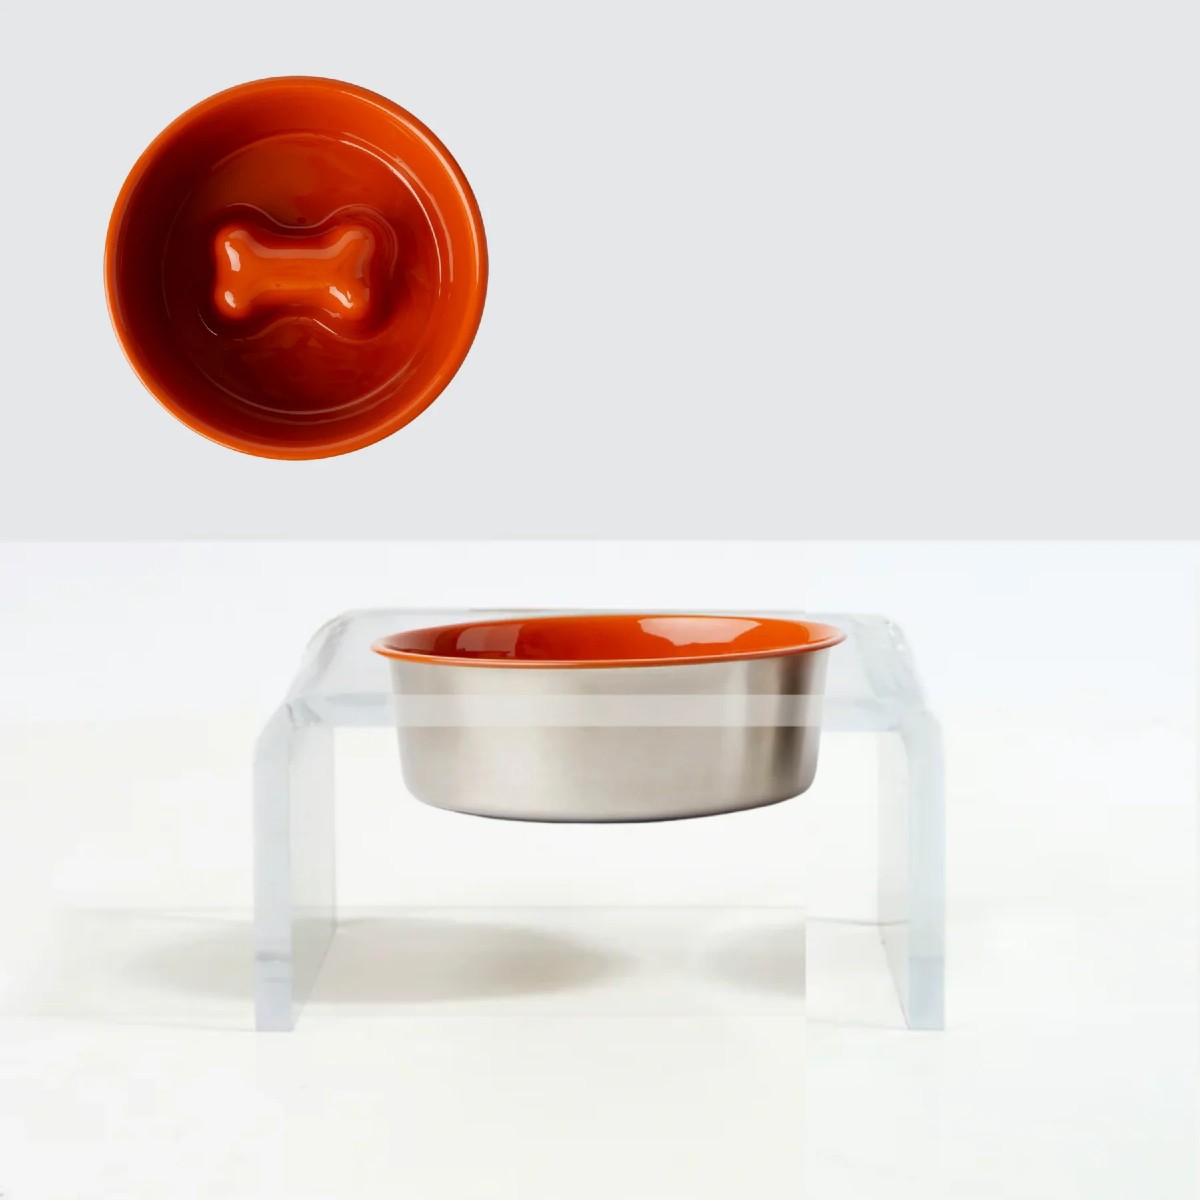 Hiddin Clear Single Dog Bowl Slow Feeder - Orange Bowl